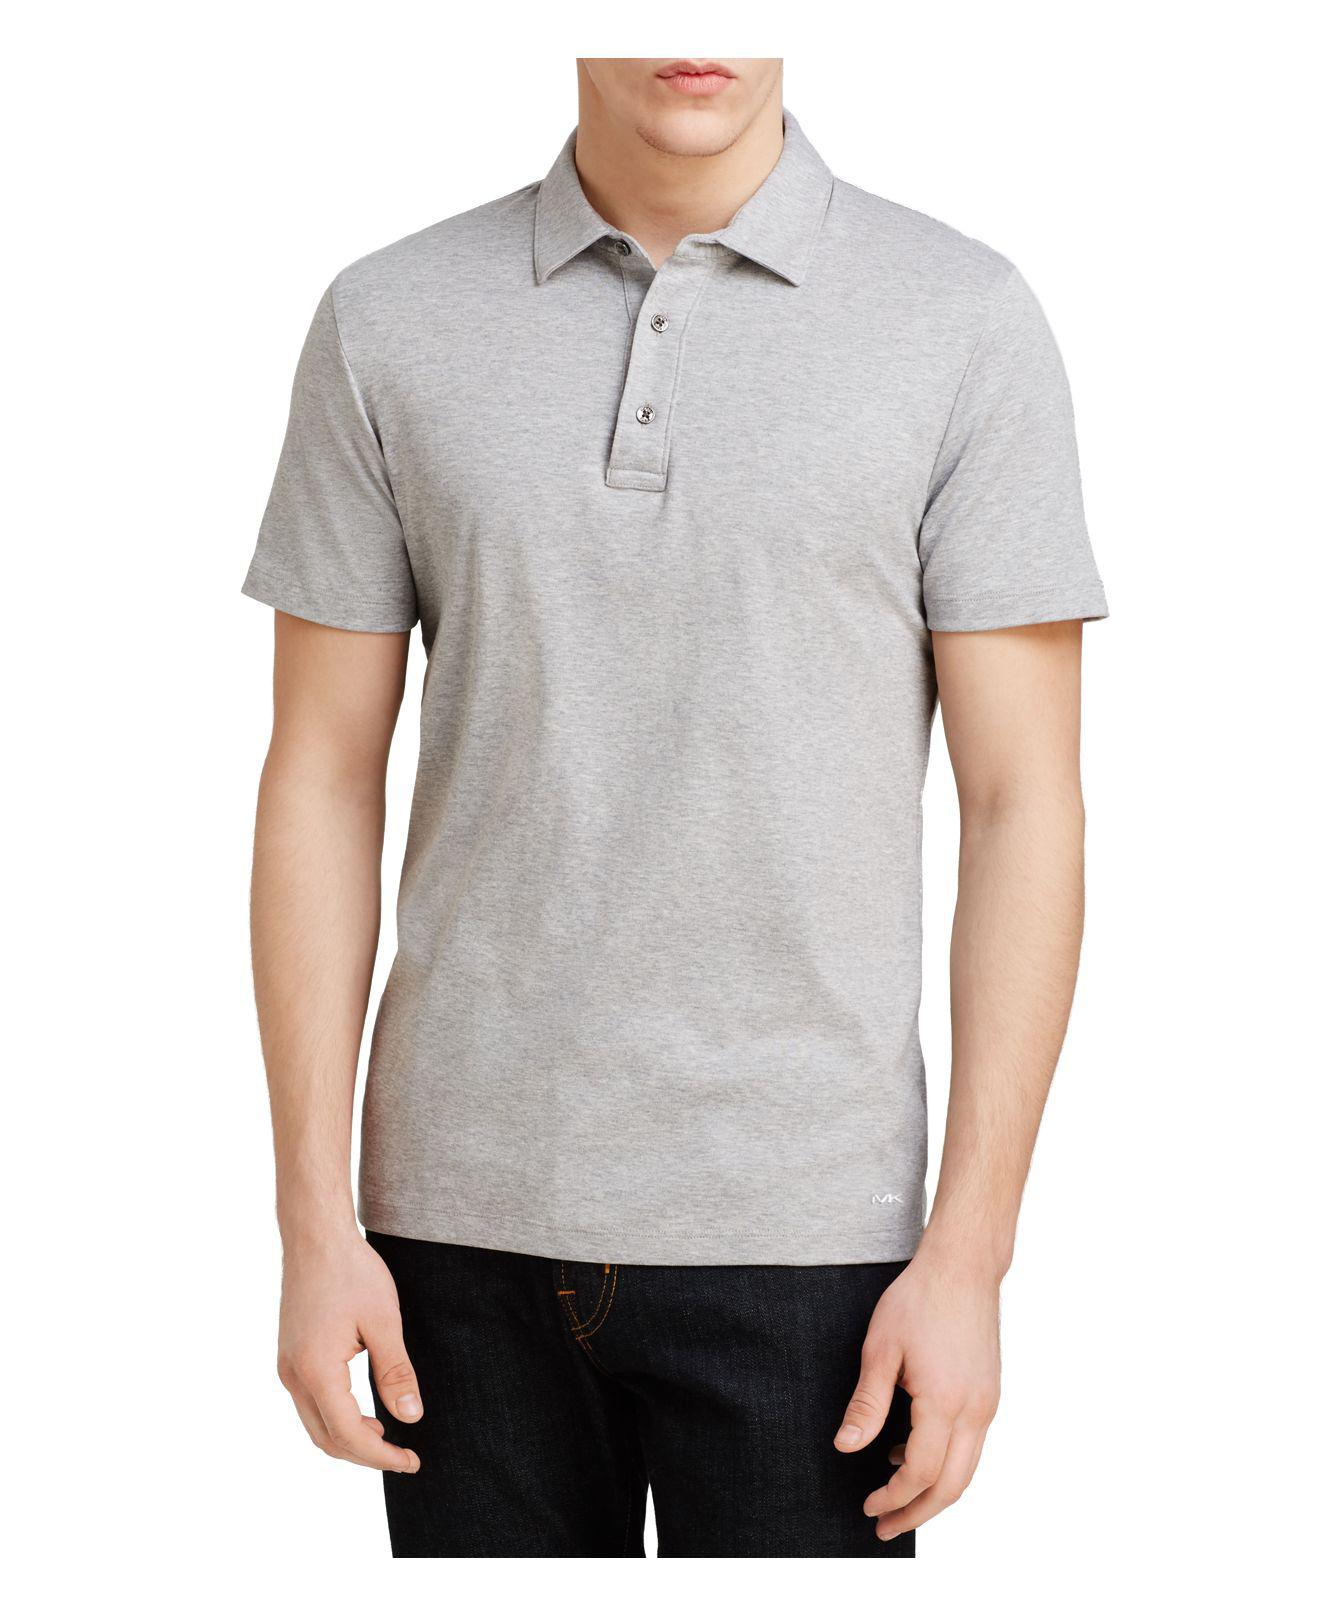 Lyst - Michael kors Sleek Slim Fit Polo Shirt in Gray for Men